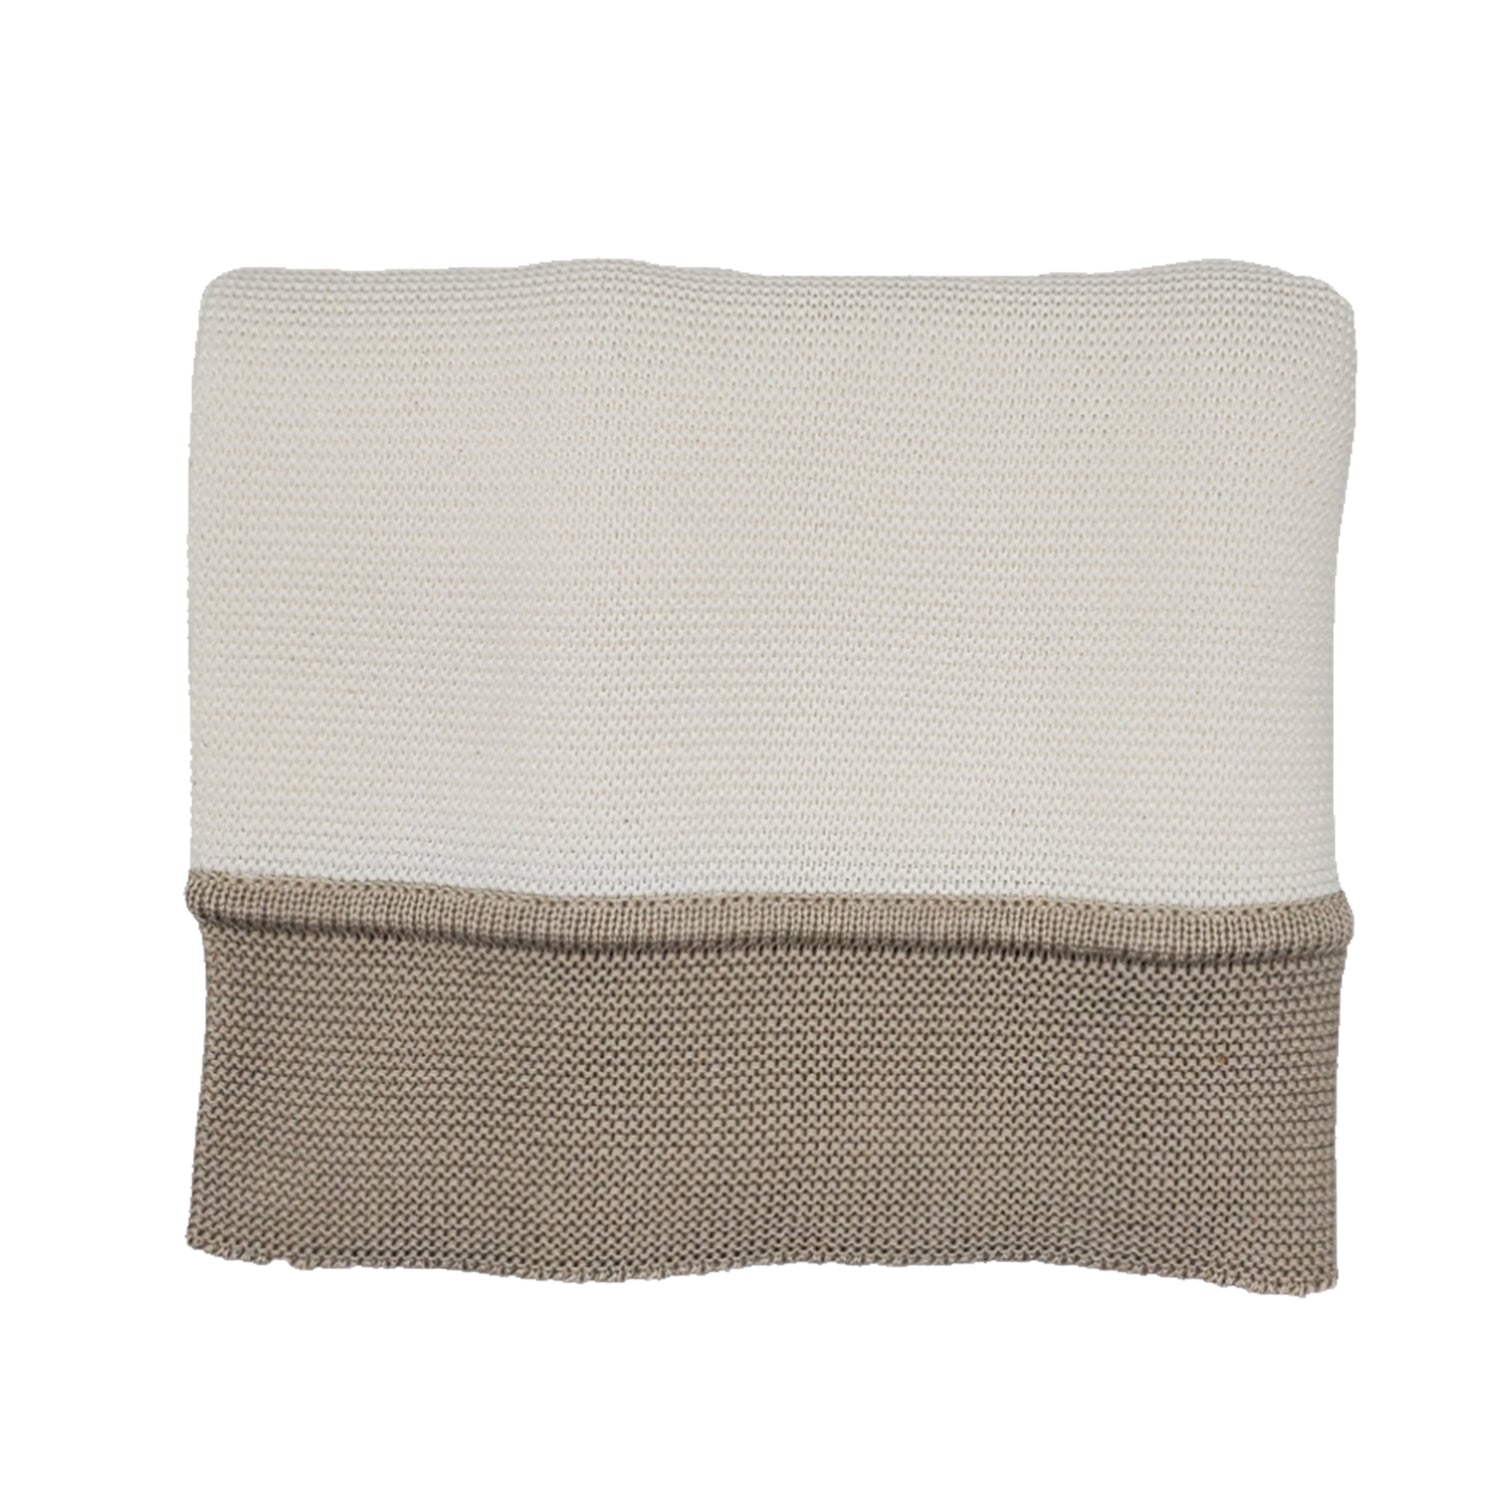 Knit Blanket - Ivory/oat